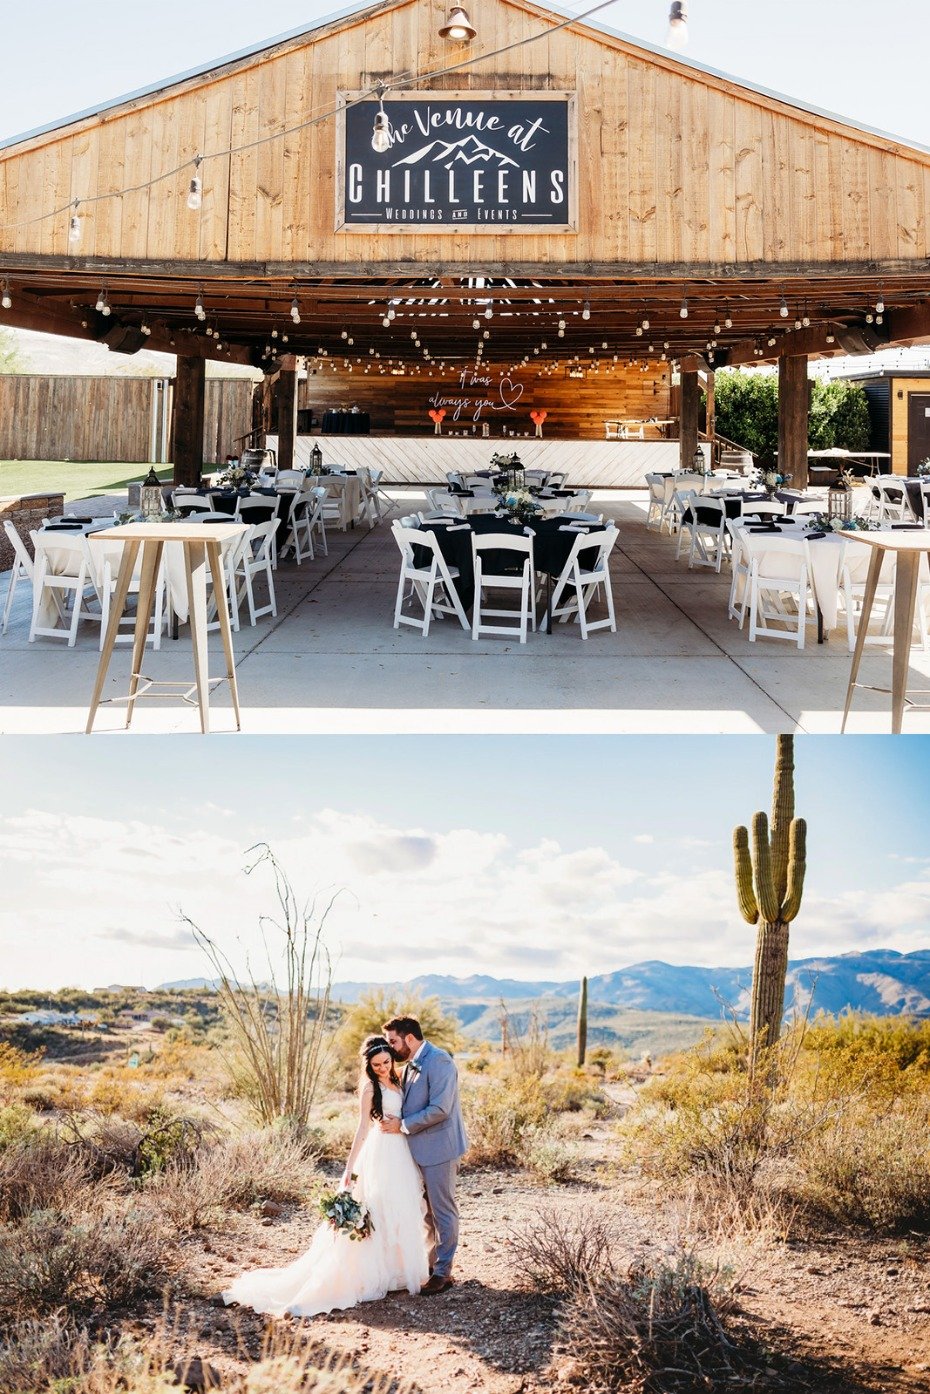 Arizona outdoor wedding venue